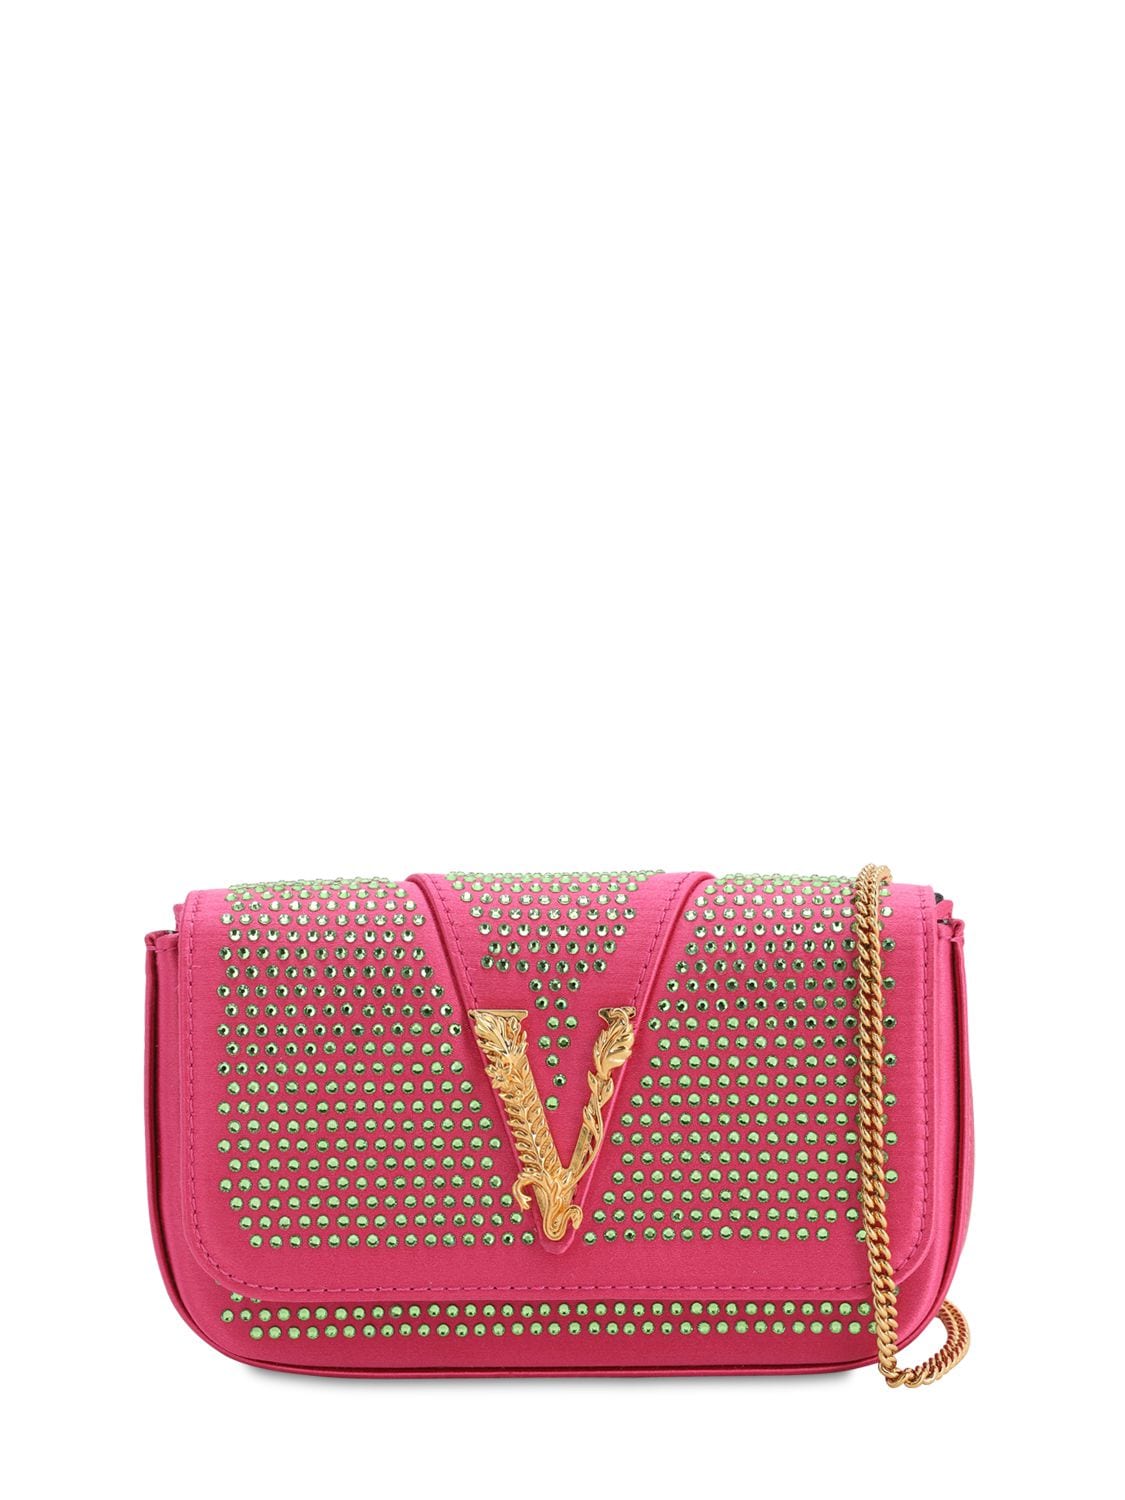 Versace Embellished Satin Shoulder Bag In Fuchsia